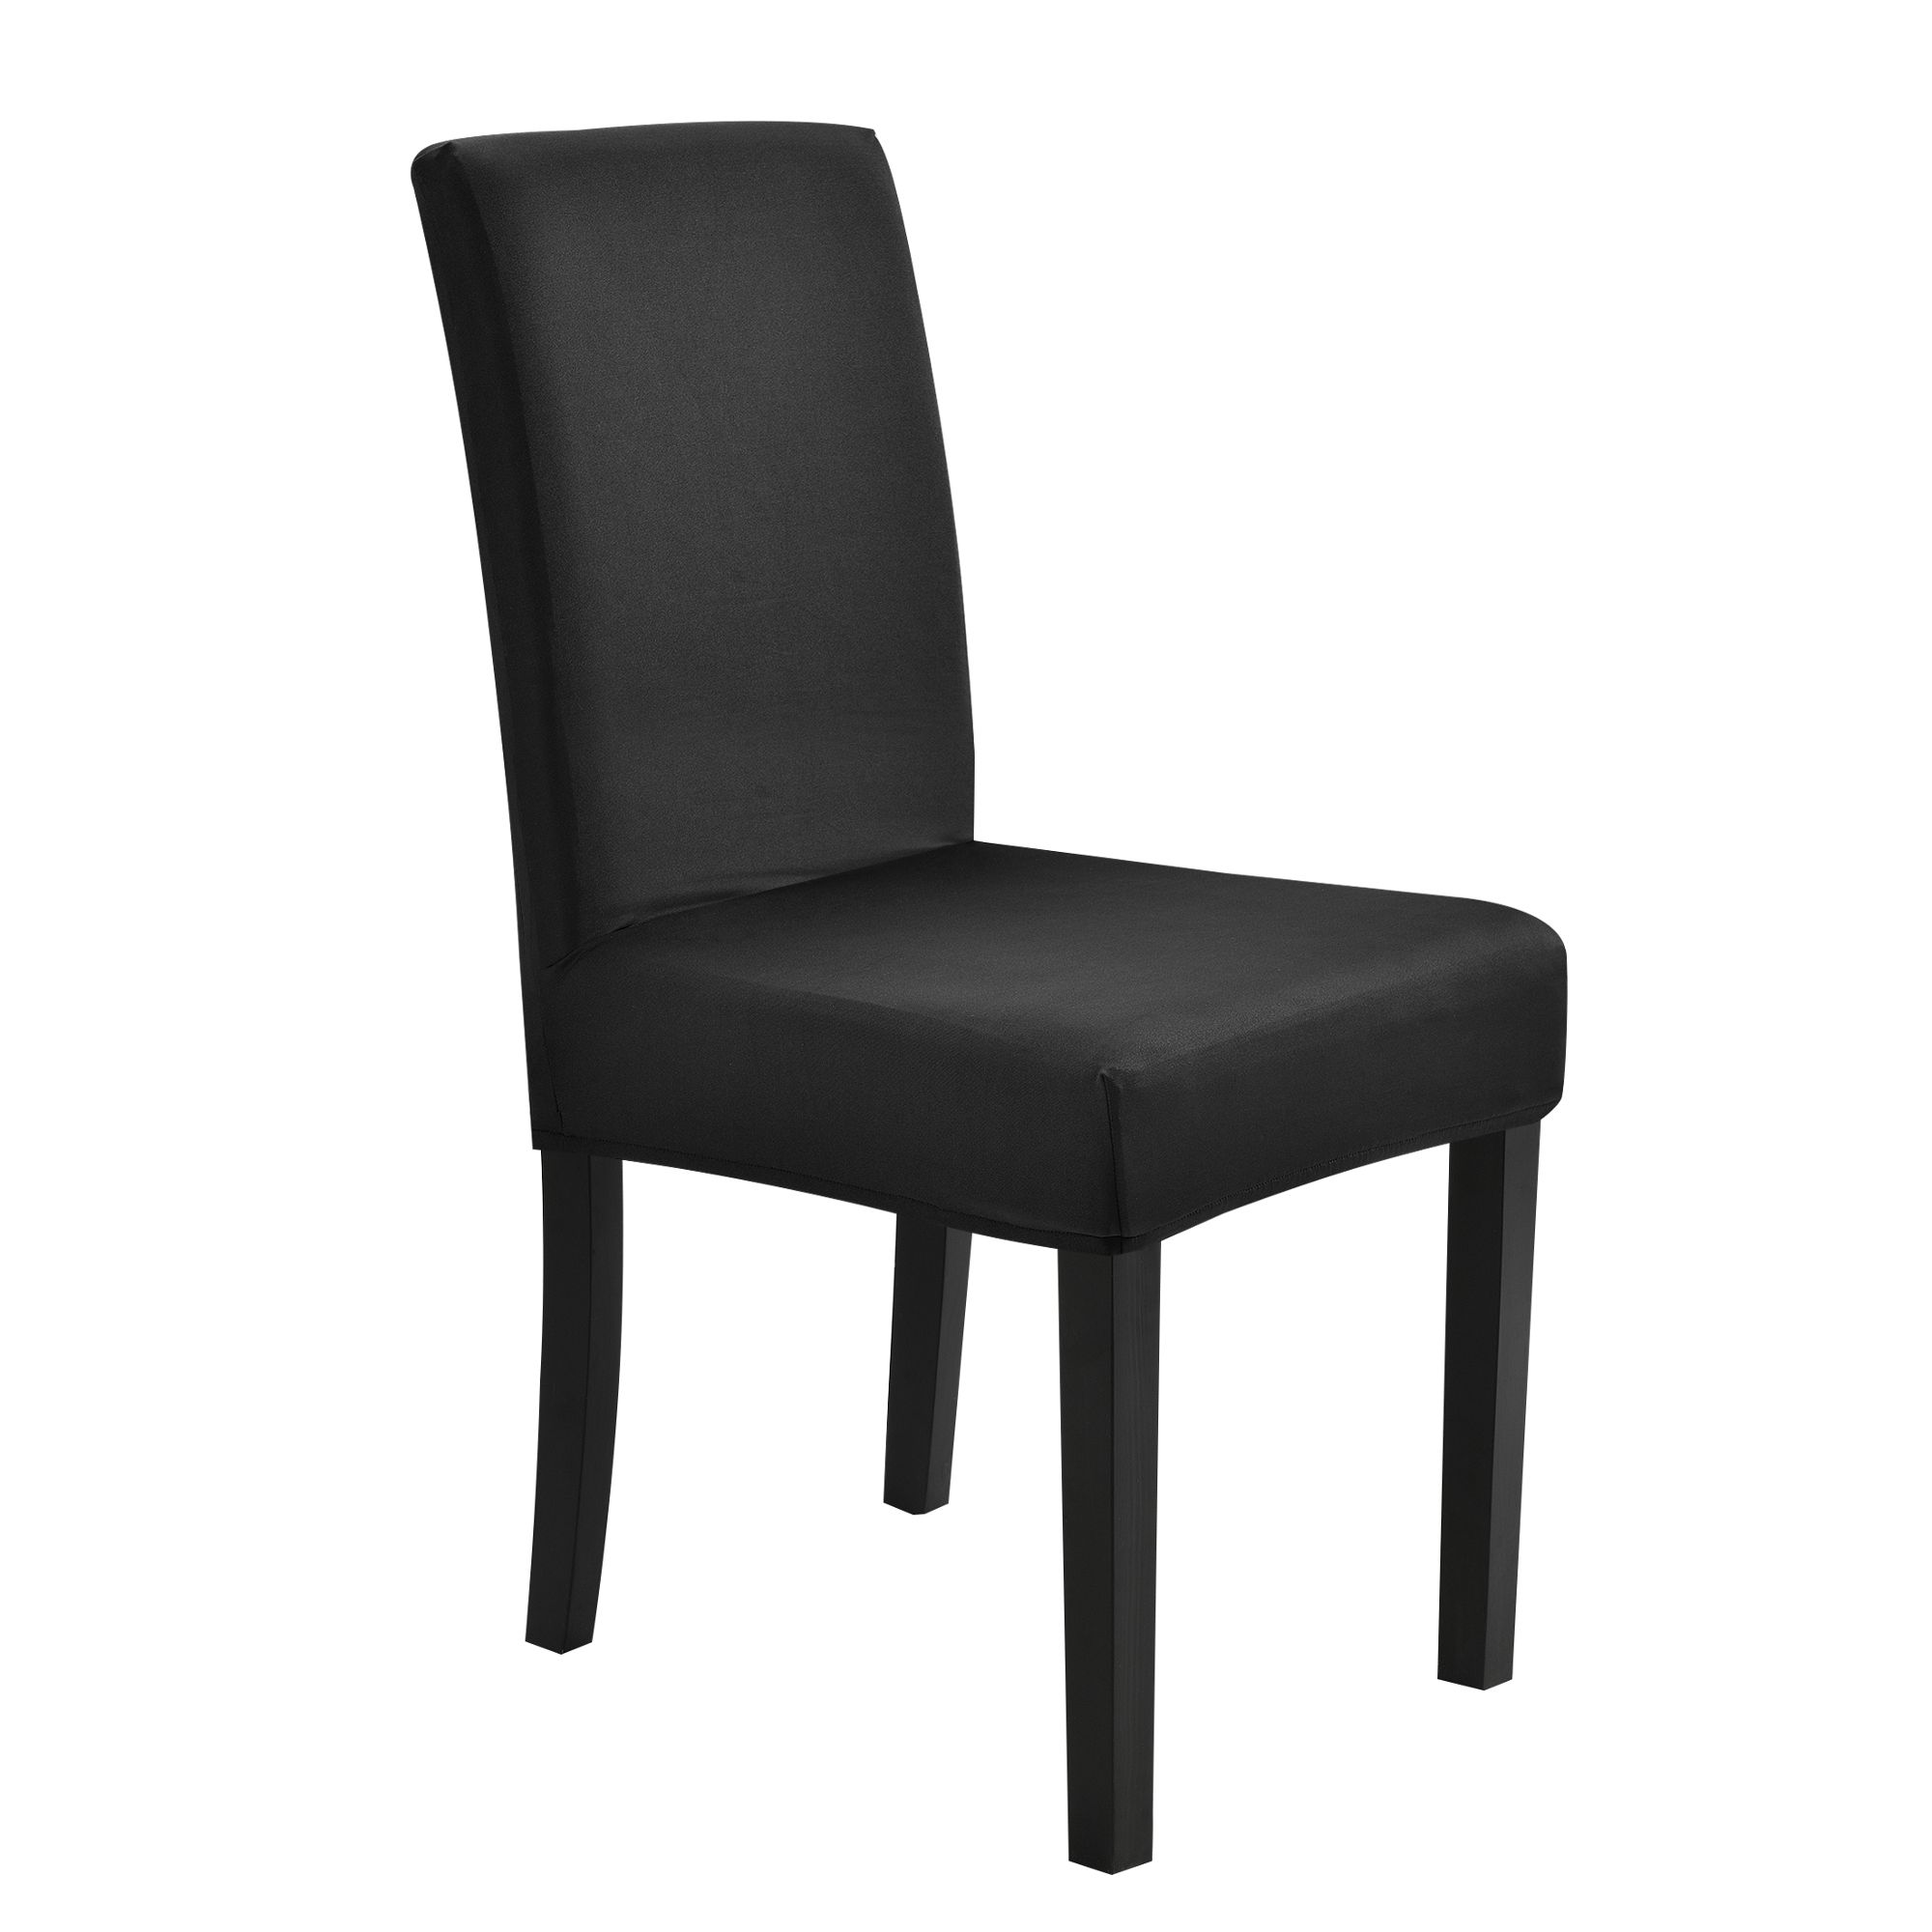 [neu.haus]® Potah na židle - černý - napínací streč na židle různych rozměrů - H.T. Trade Service GmbH & Co. KG